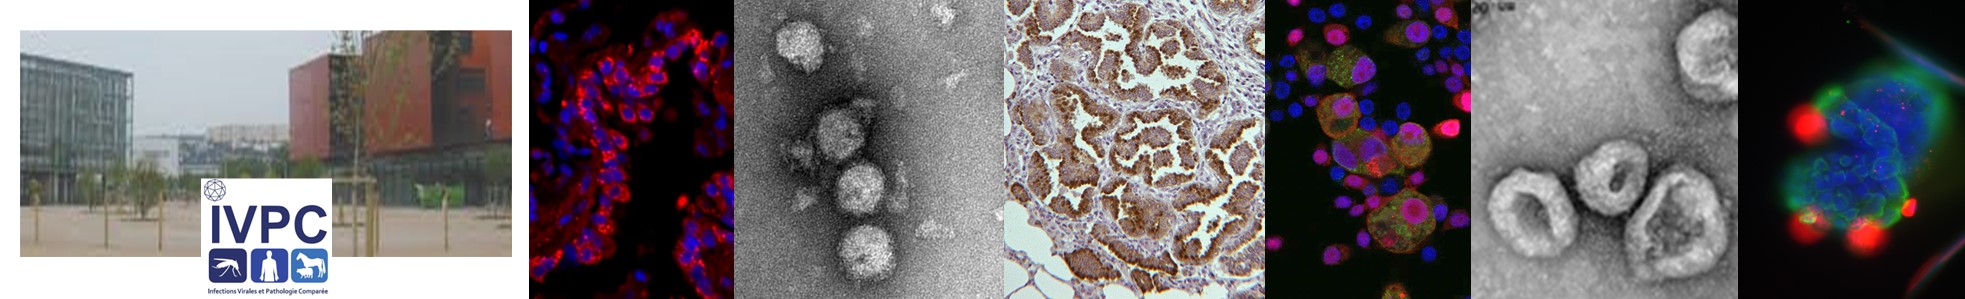 Equipes de recherche de l'UMR 754 "Infections Virales et Pathologie Comparée"